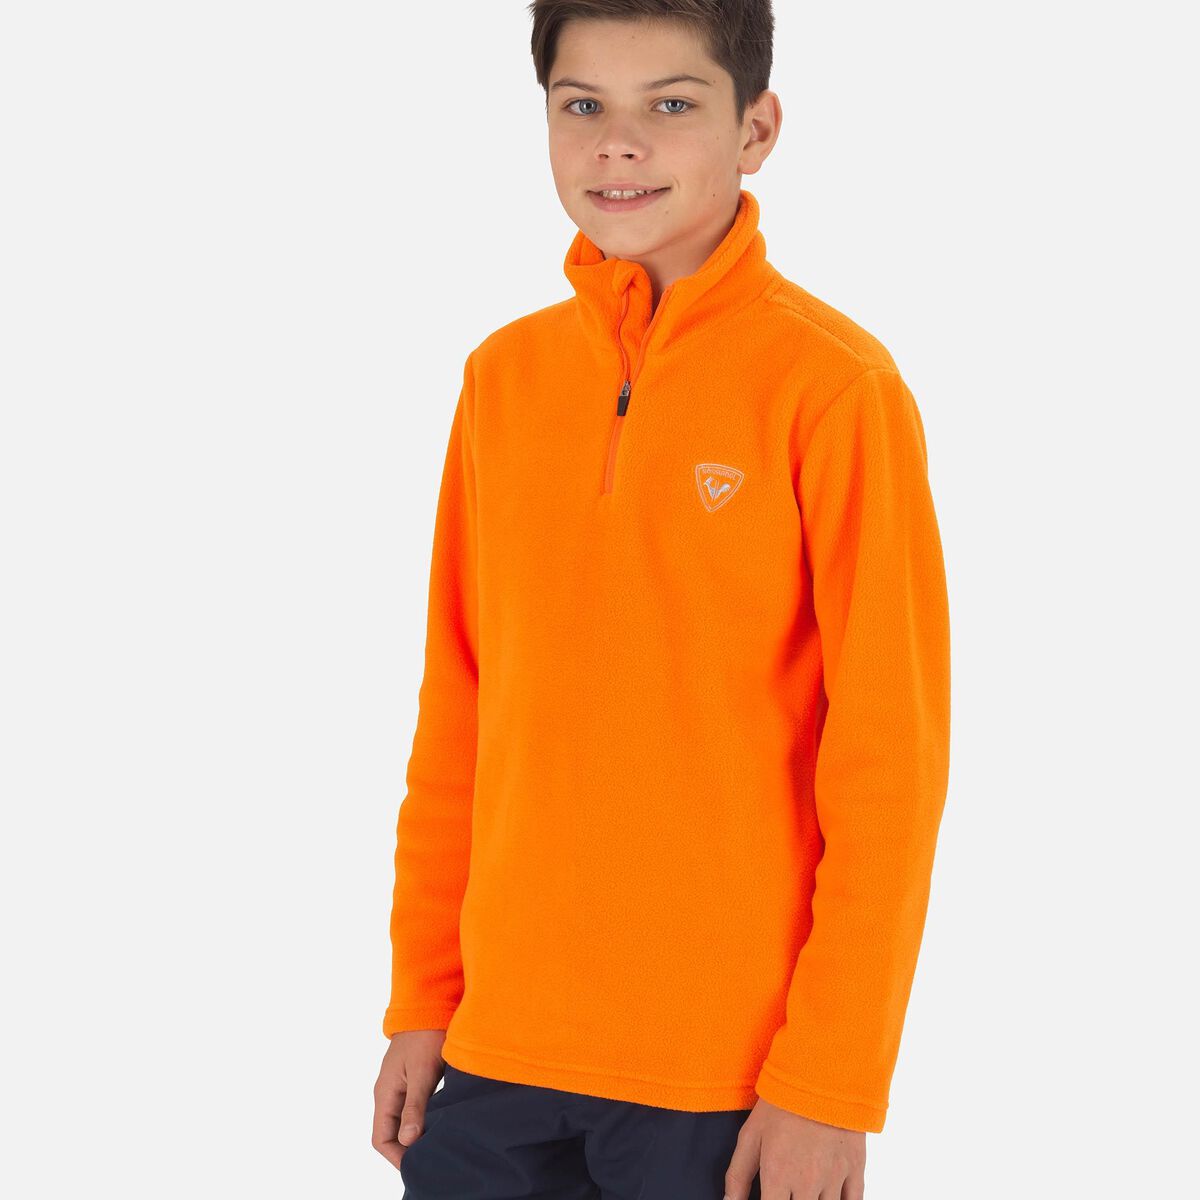 Rossignol Boys' Half-Zip Fleece Top Orange